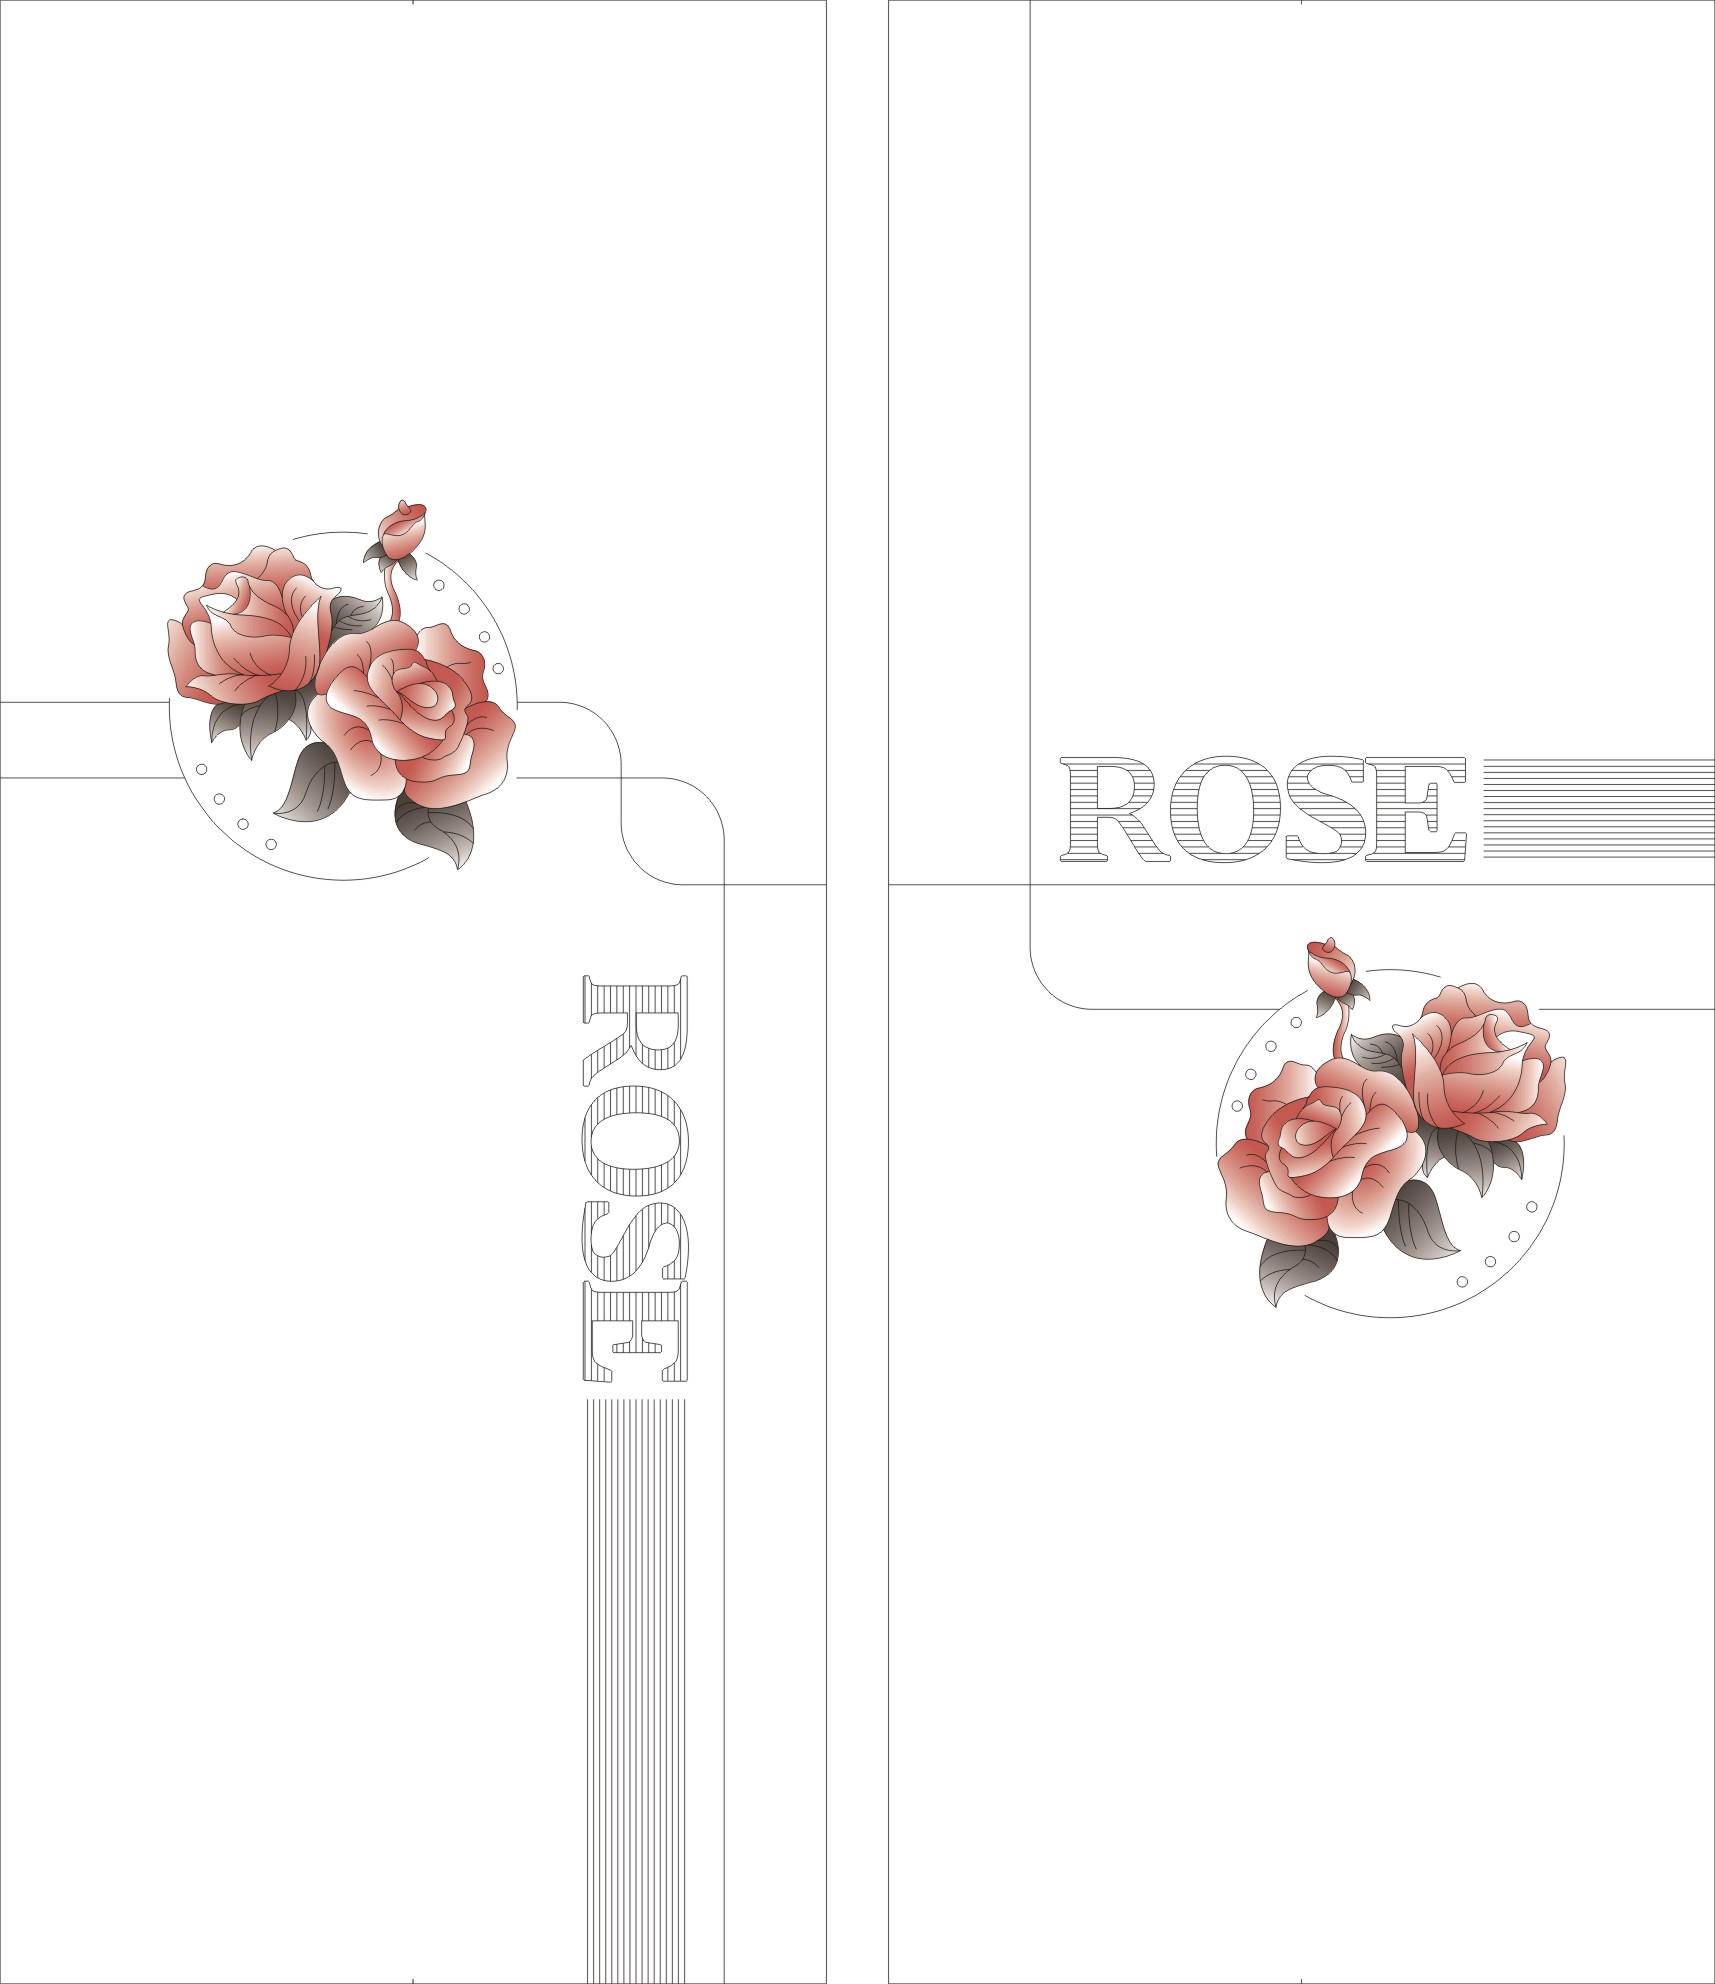 ABC-1025 彩雕板,新款,高光系列 ROSE   玫瑰   线条圆形   雕刻彩绘   高光板   红色 